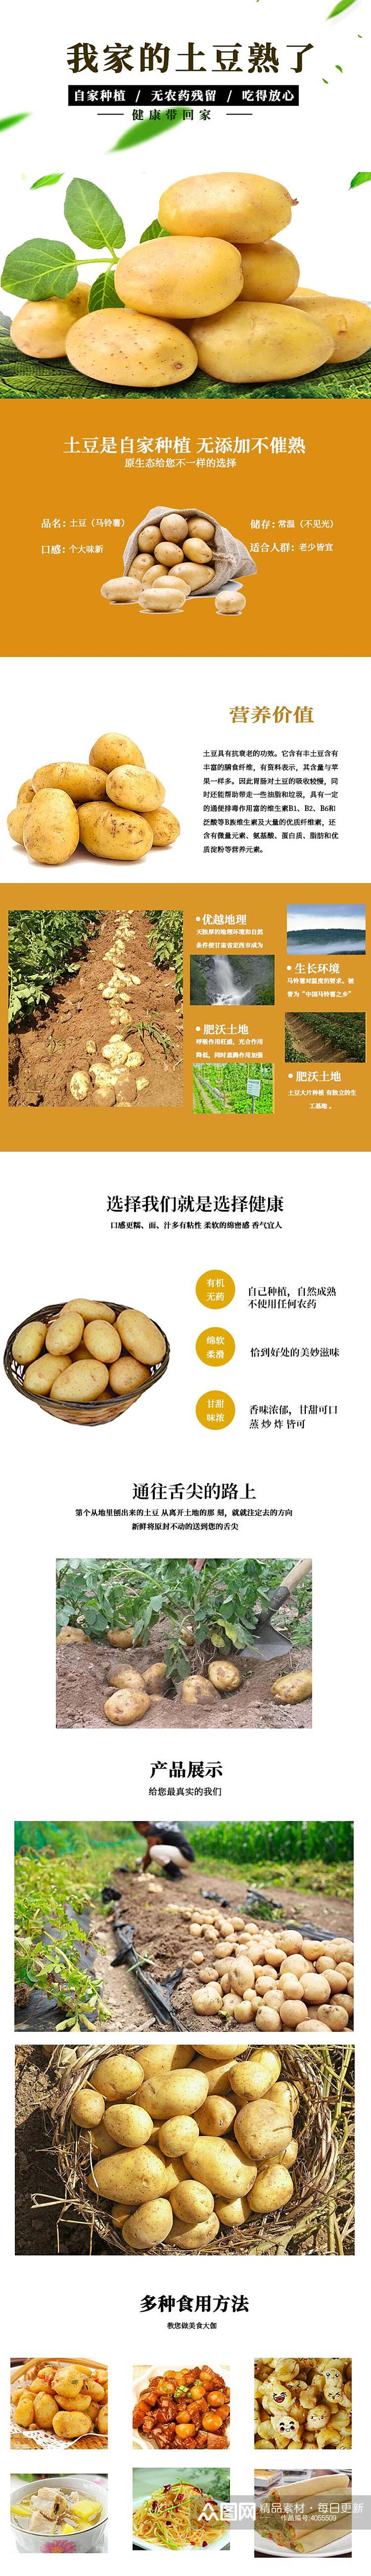 土豆蔬菜手机版详情页素材